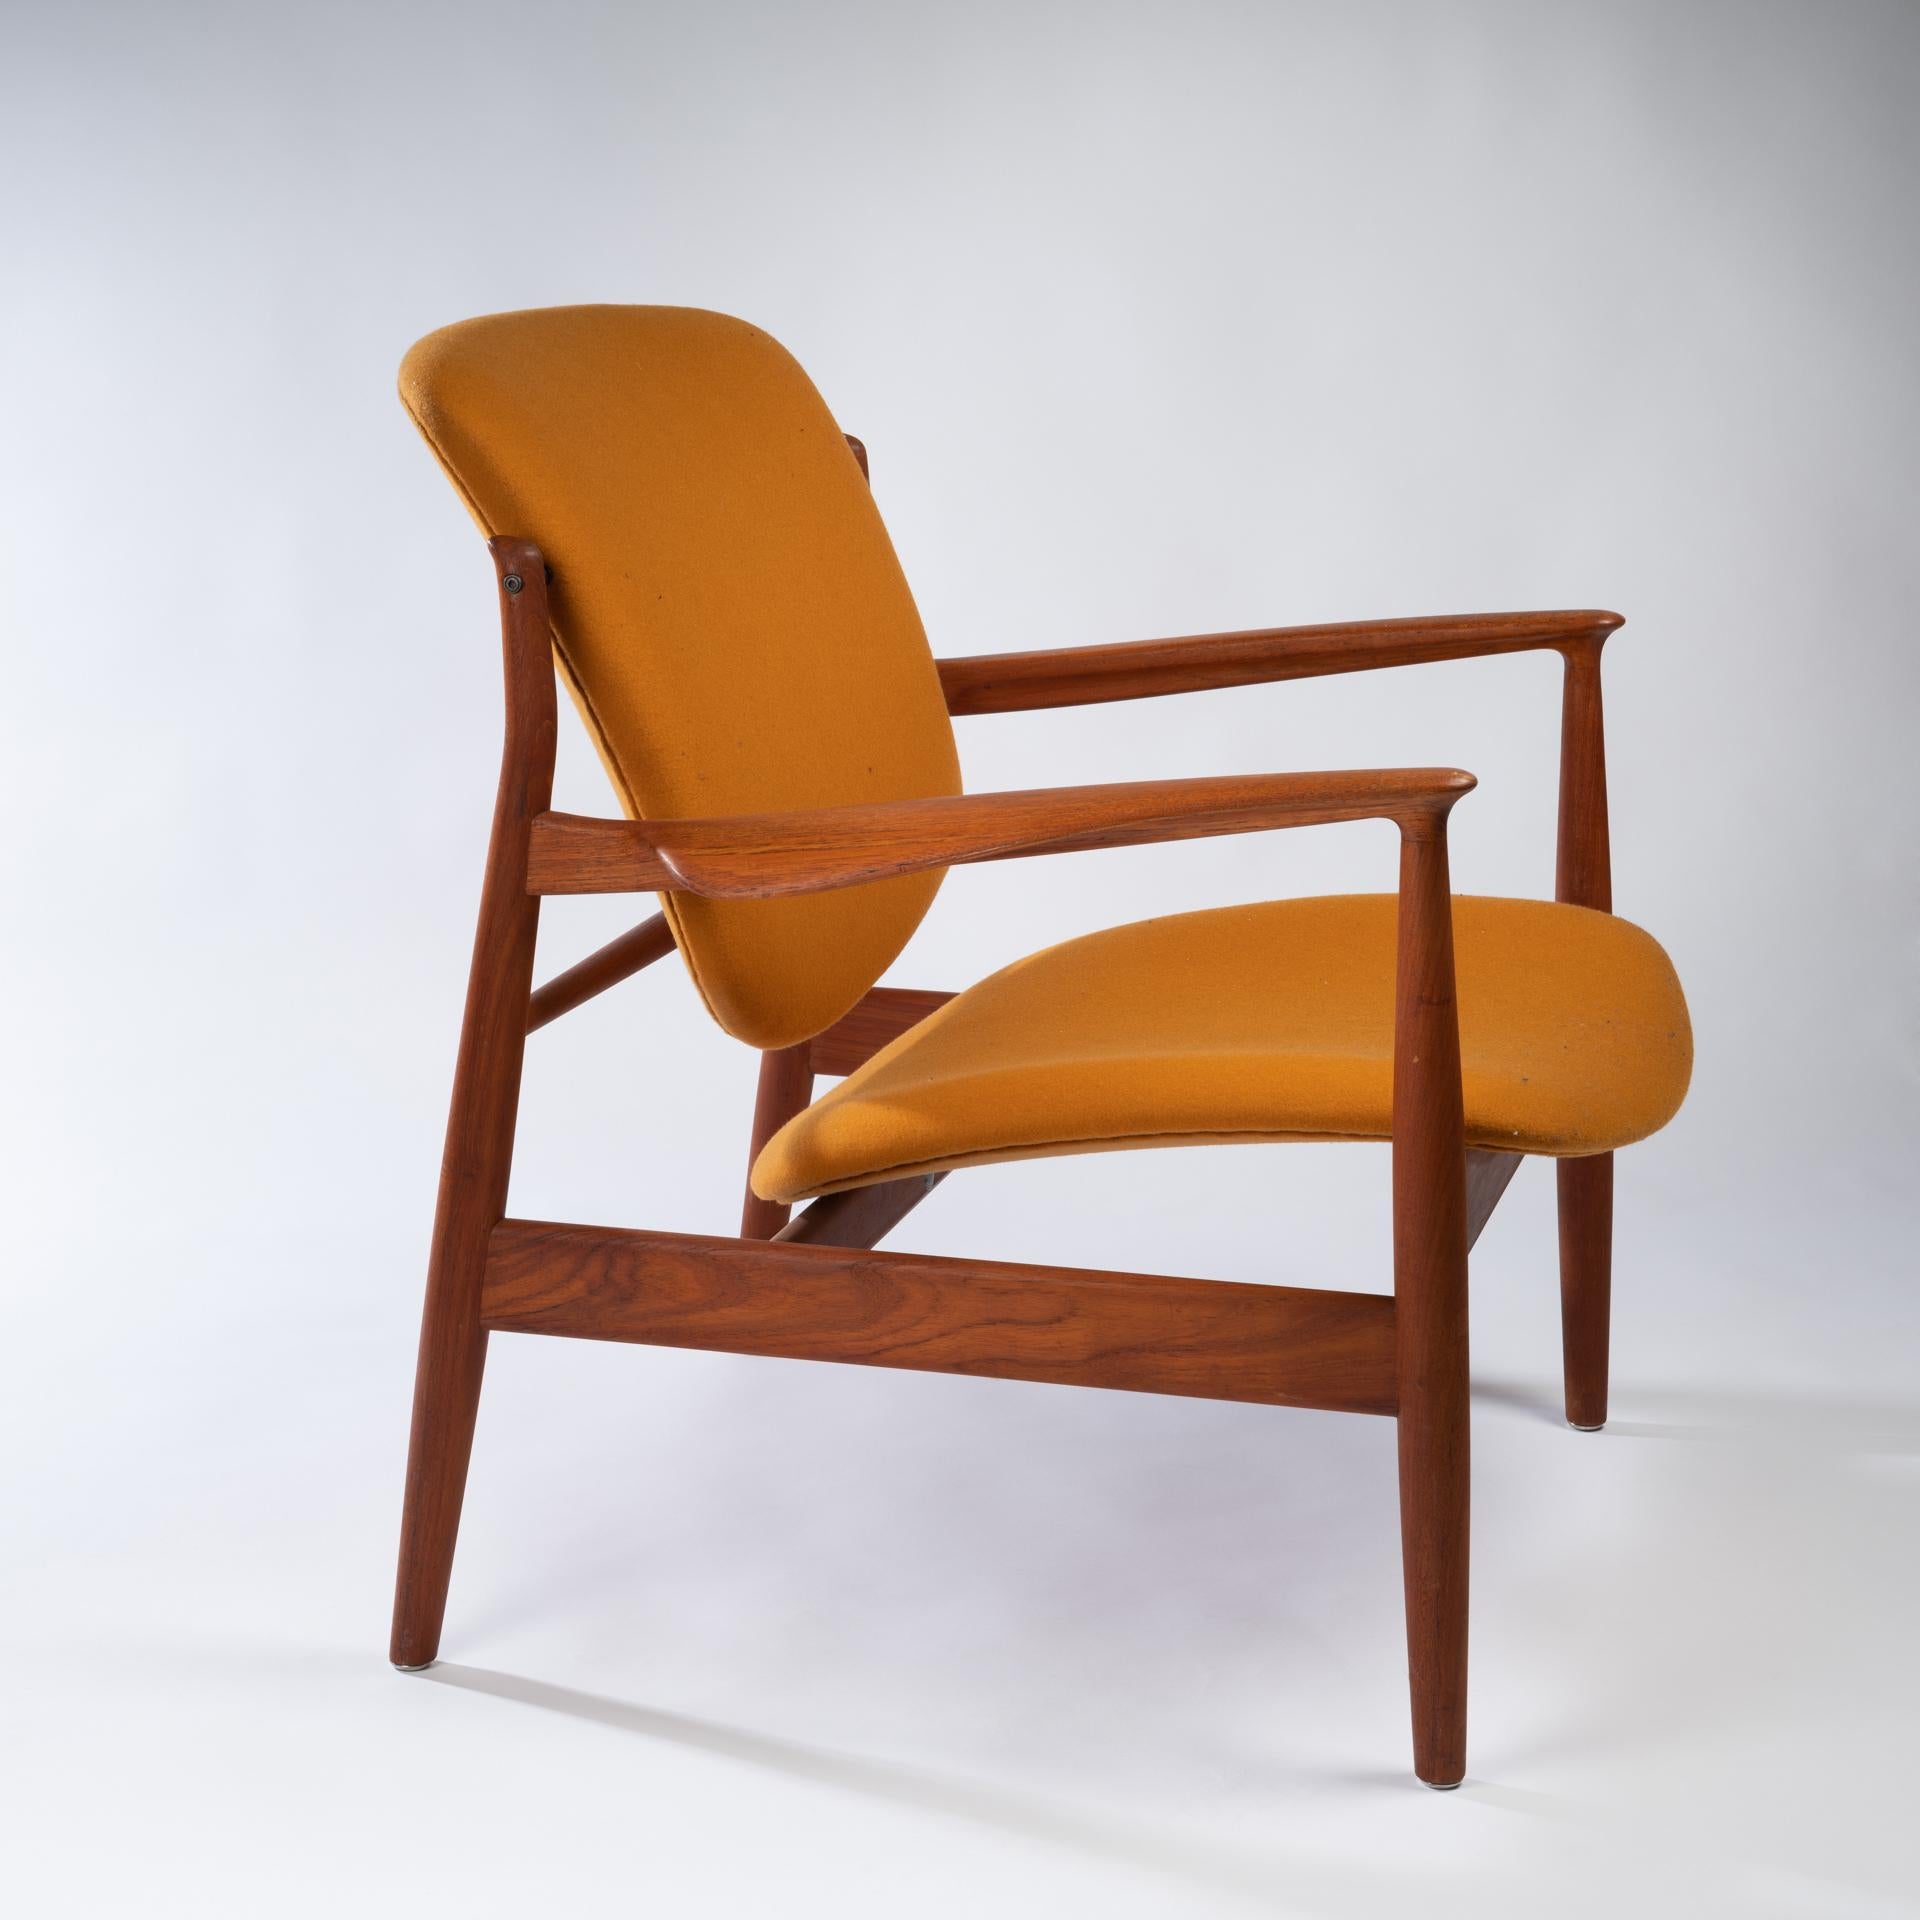 Scandinavian Modern Lounge Chair Model Fd136, Designed by Finn Juhl, 1950s For Sale